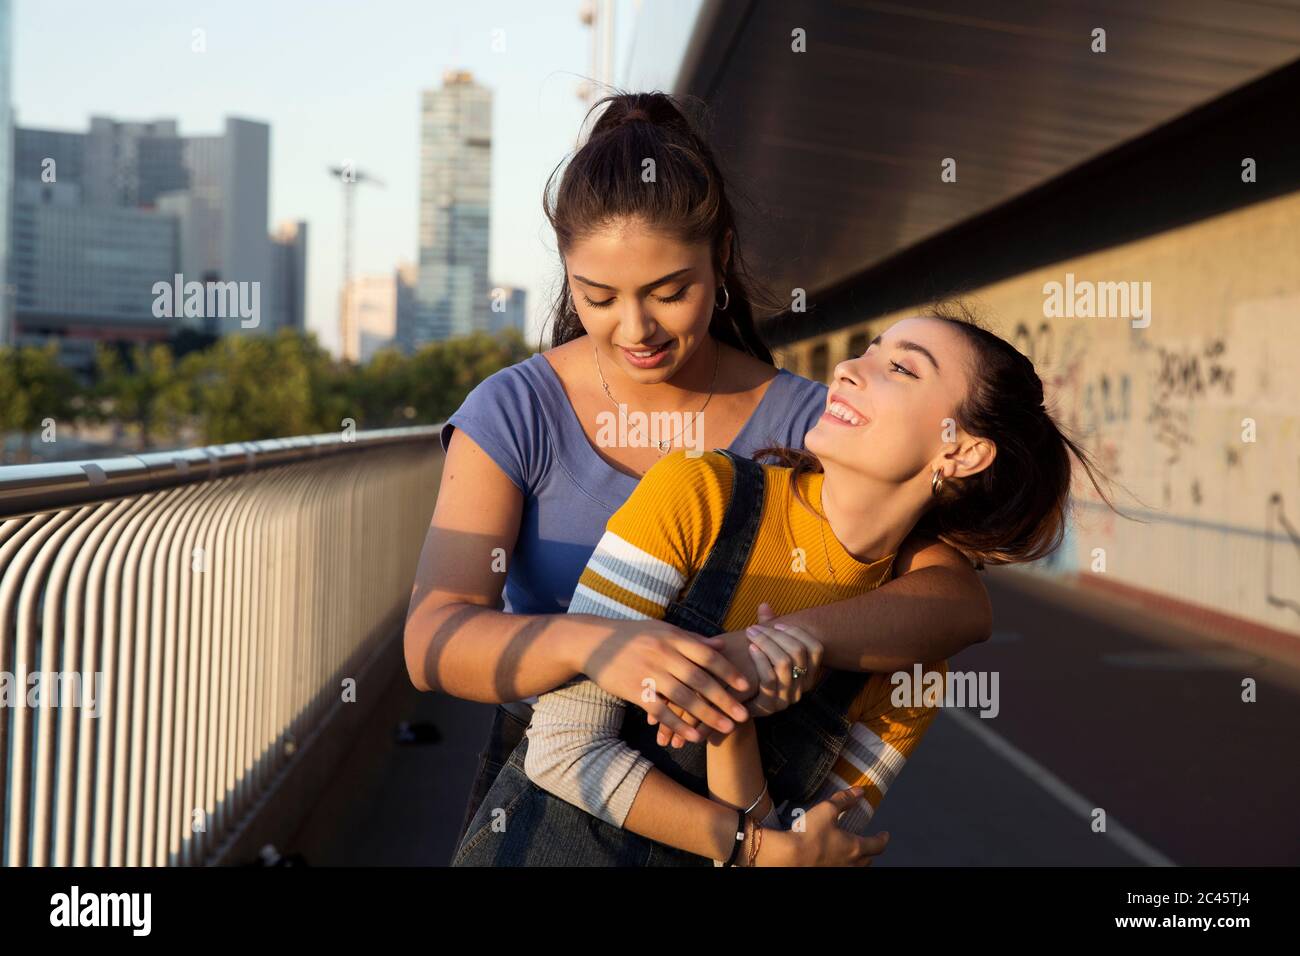 Deux jeunes femmes aux longs cheveux bruns se tenant sur un pont urbain, embrassant et souriant. Banque D'Images